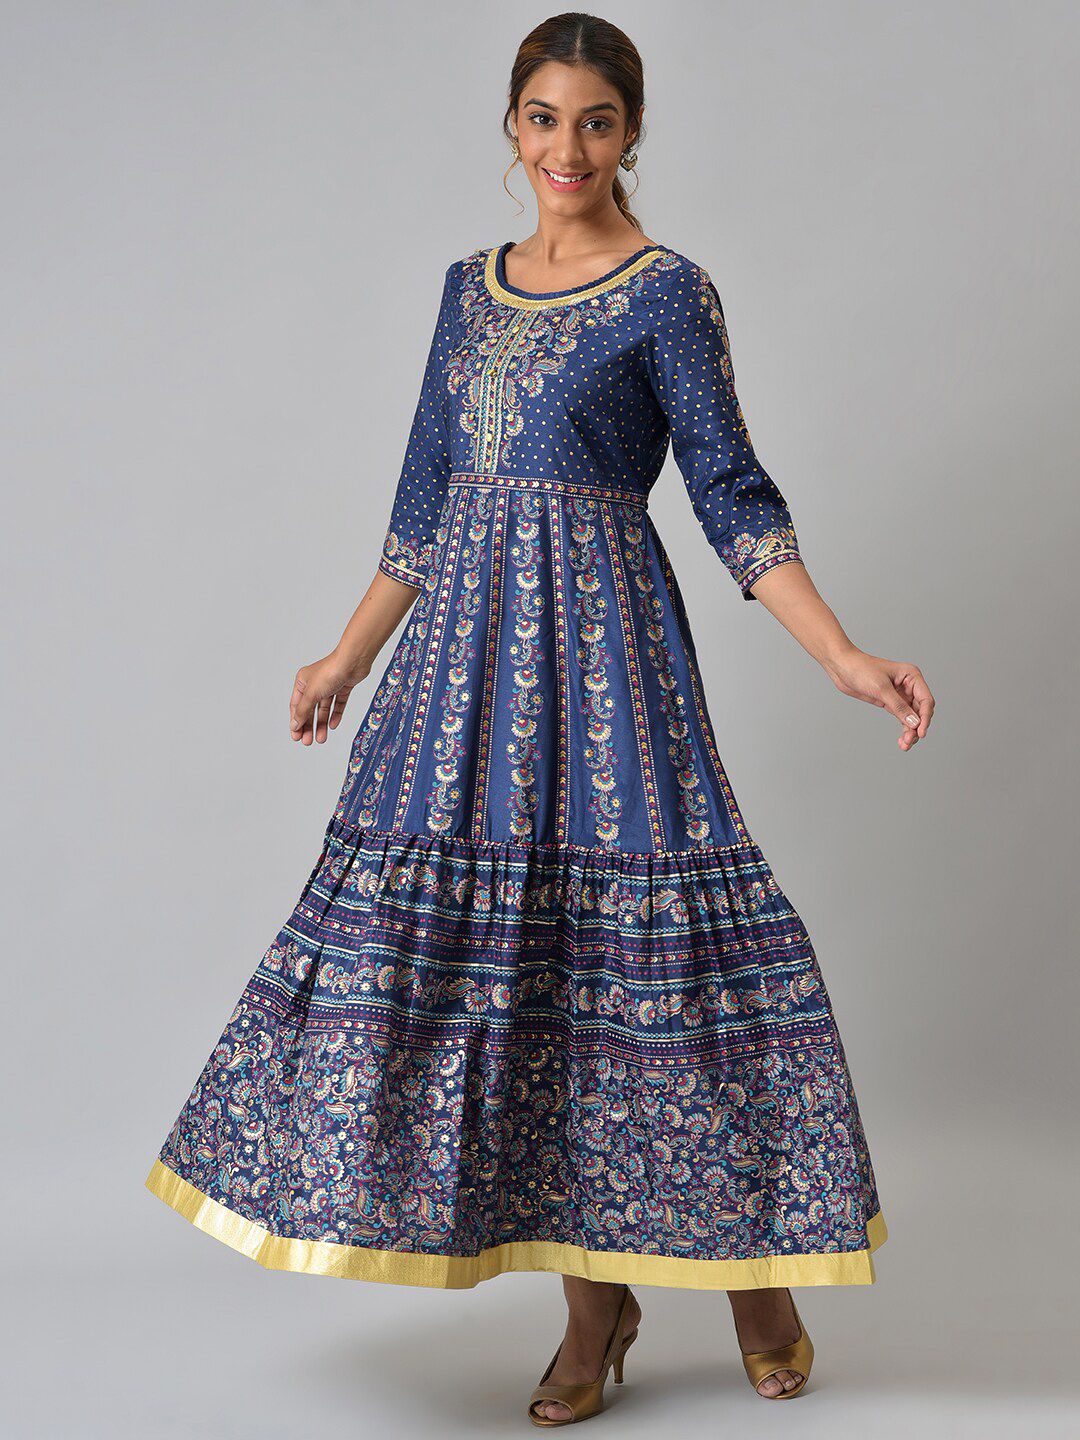 AURELIA Navy Blue Ethnic Motifs Ethnic Maxi Dress Price in India